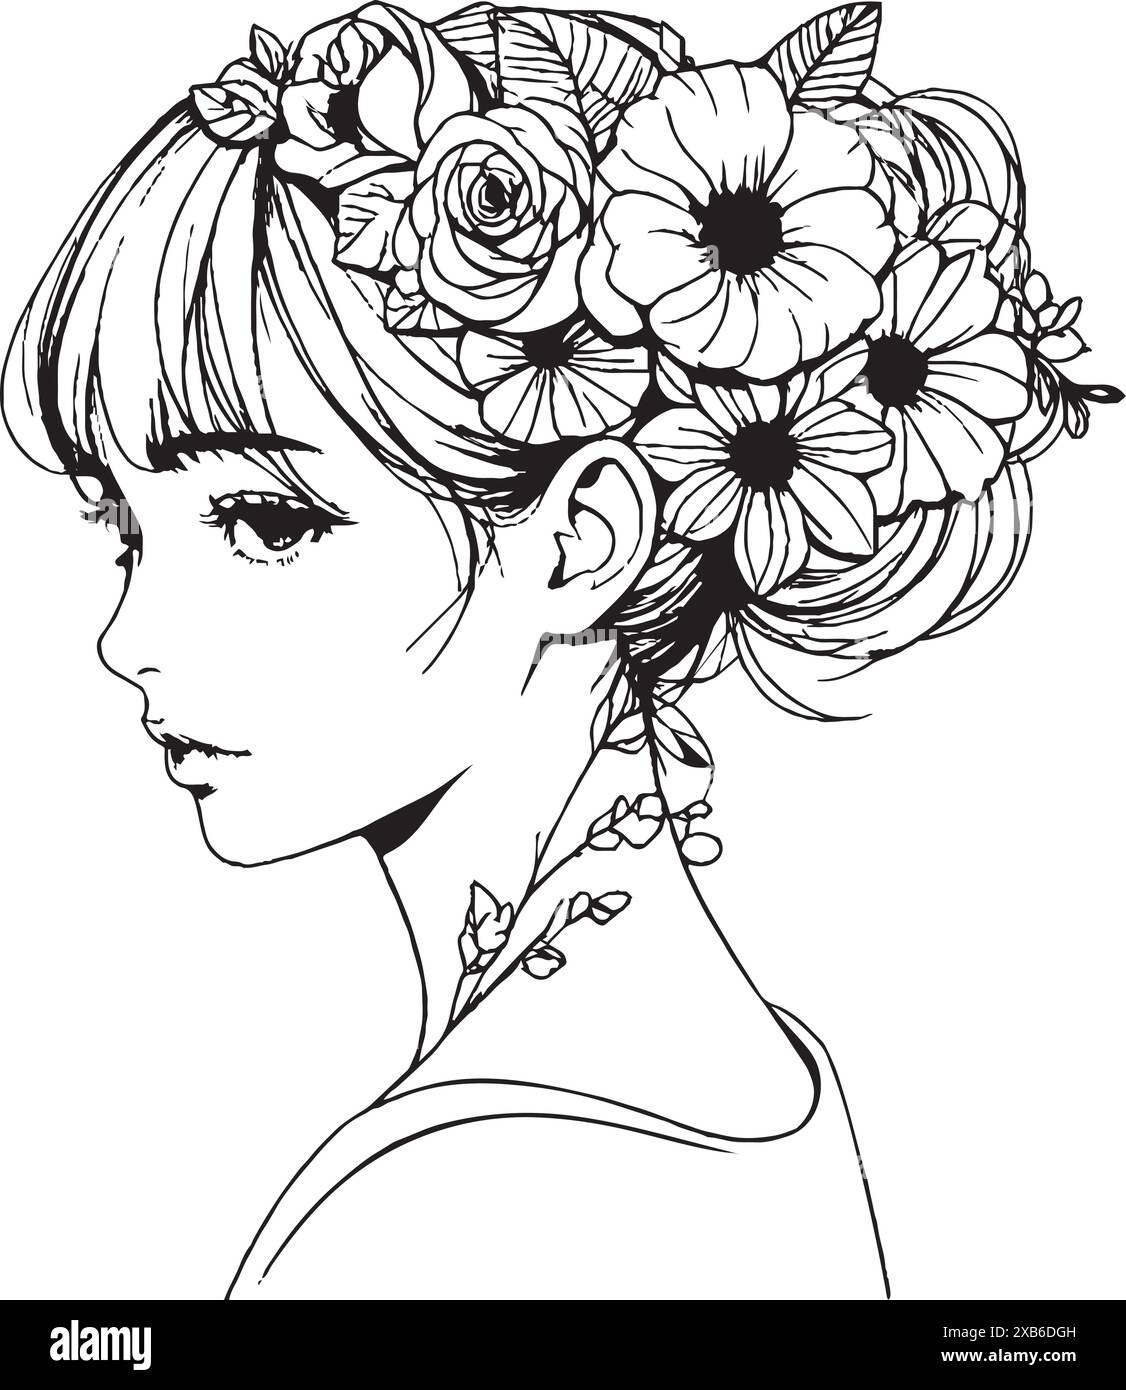 Portrait linéaire sophistiqué d'une jeune femme avec des fleurs dans les cheveux, fabriqué à partir d'élégantes lignes noires, isolé. Illustration de style bohémien est à la fois g Illustration de Vecteur